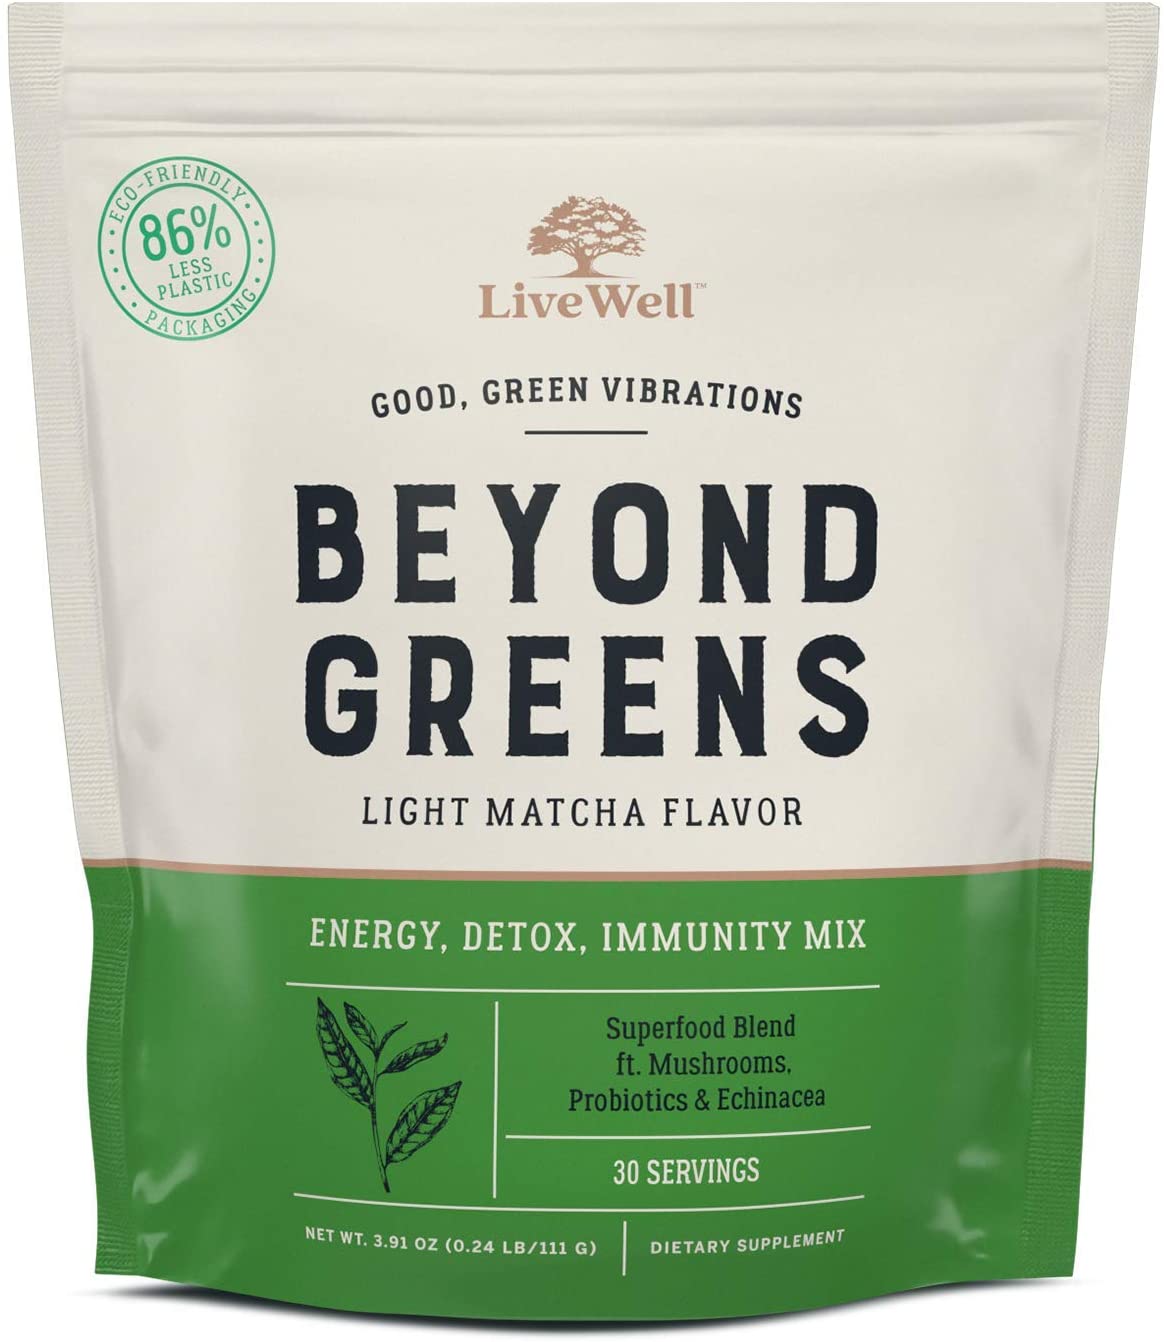 Beyond Greens supplement bag